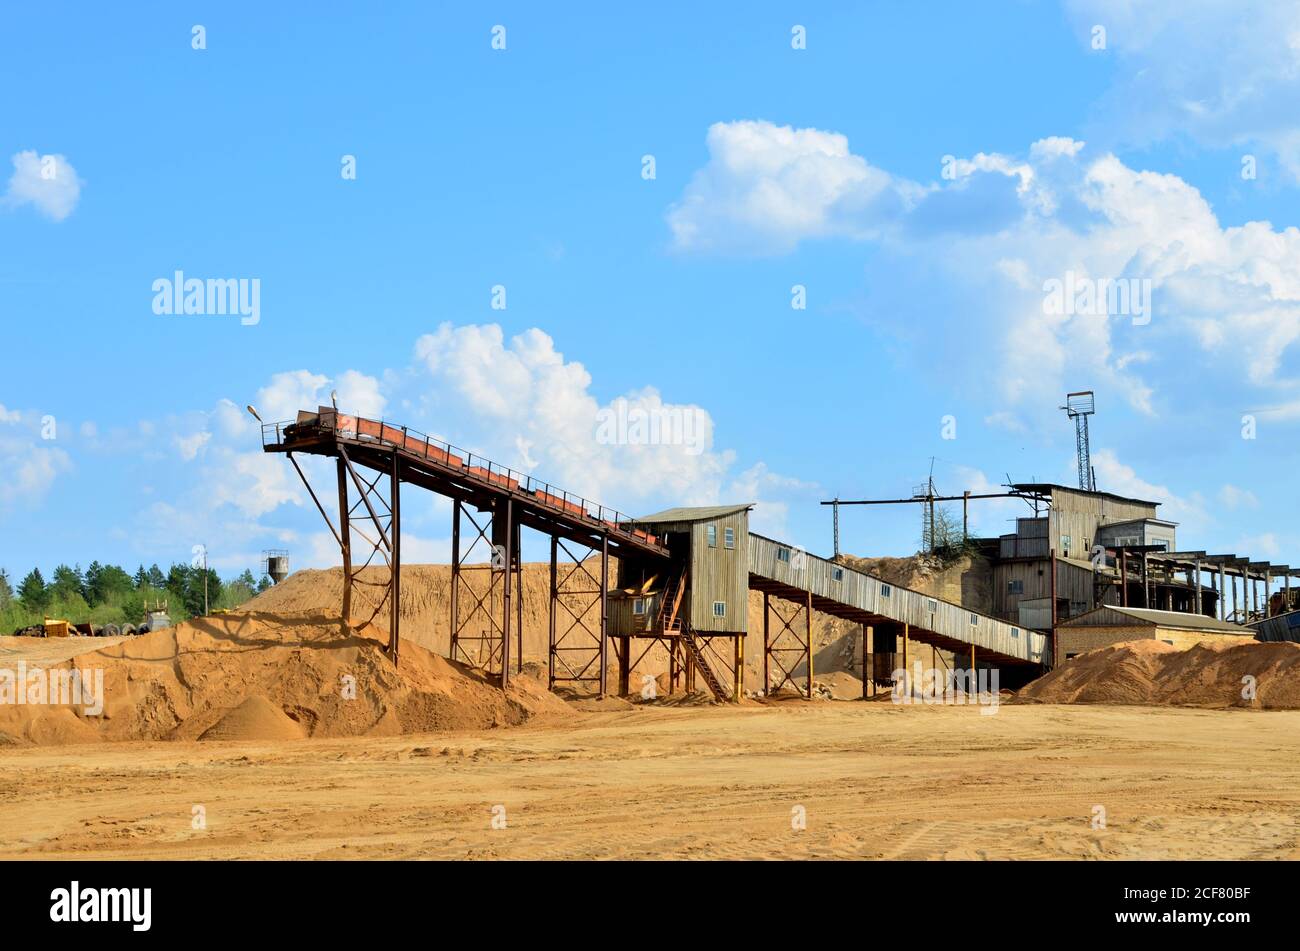 Usine de production de sable dans une carrière minière. Usine de concassage avec chaîne de production pour le concassage, le broyage de pierres, le tri de sable et de matériaux en vrac. Lavage au sable Banque D'Images